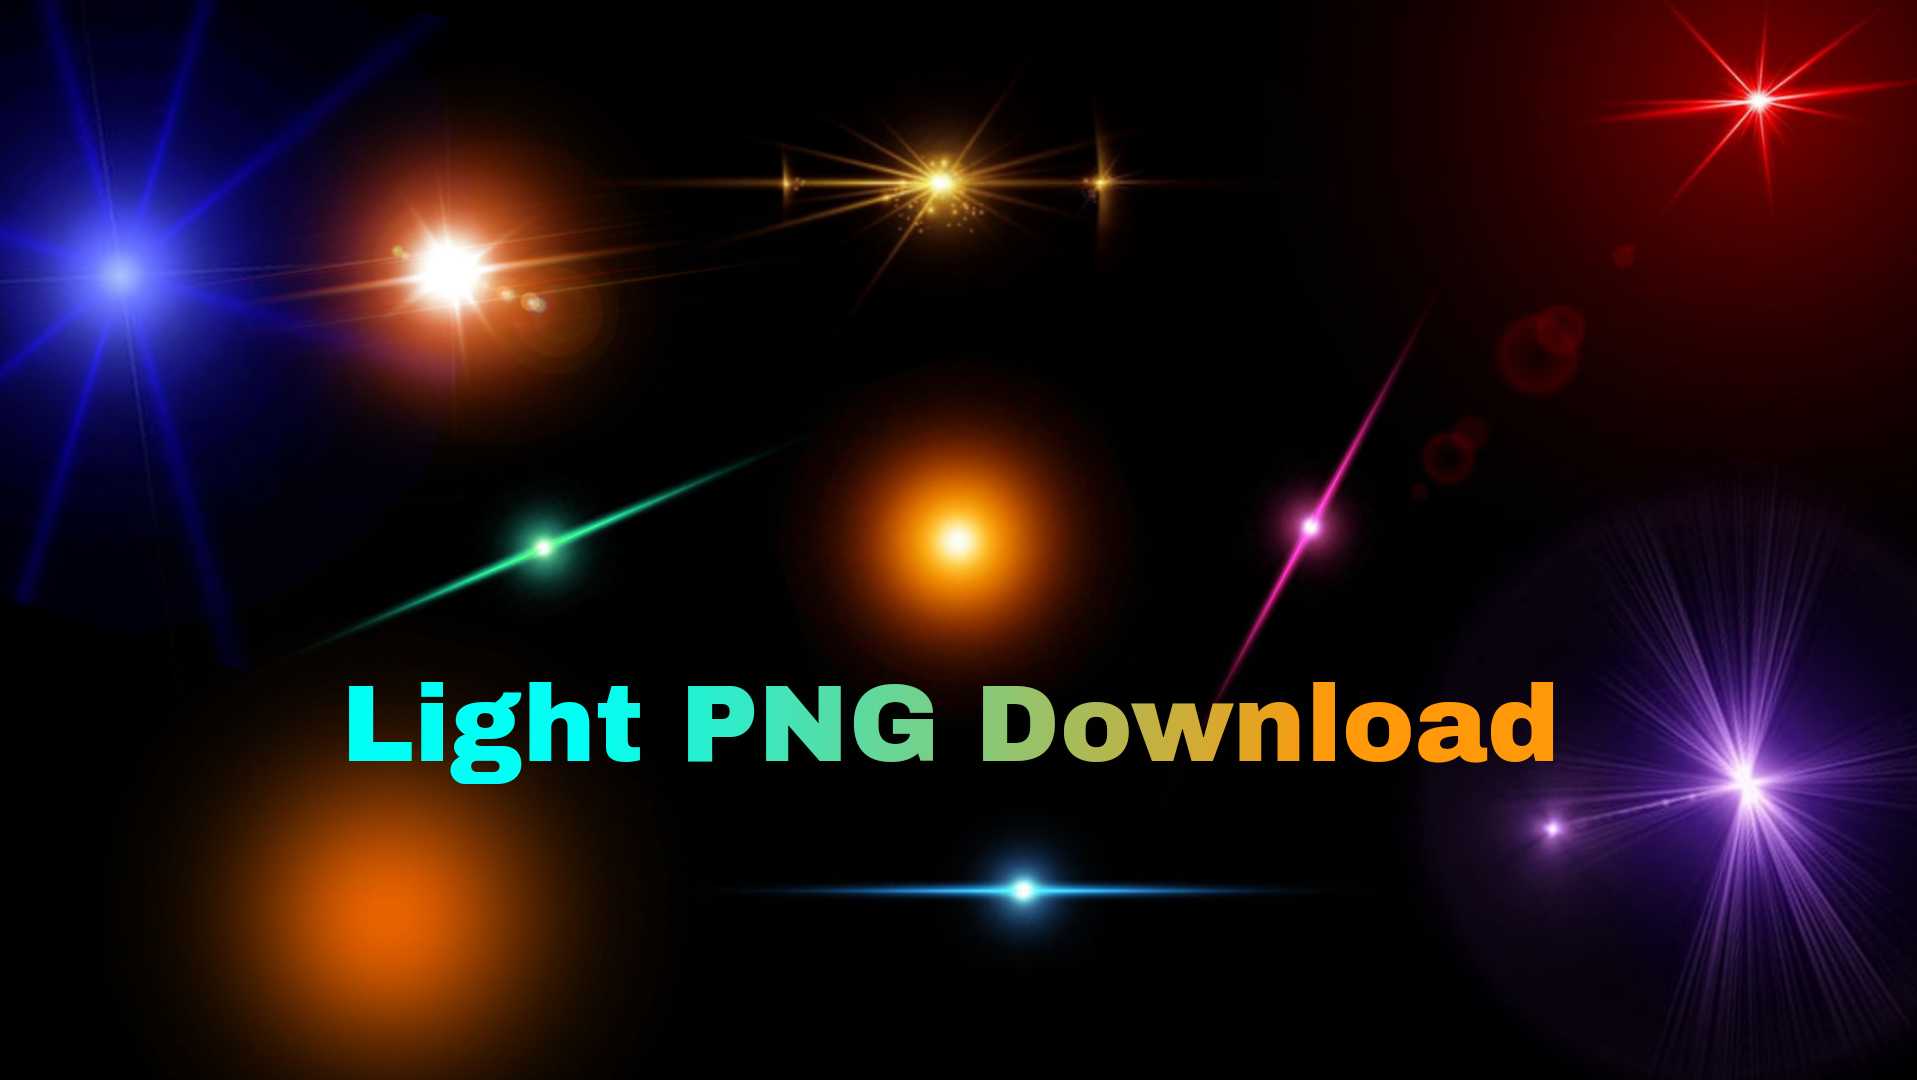 Light Png zip file Download - Pixa Ocean